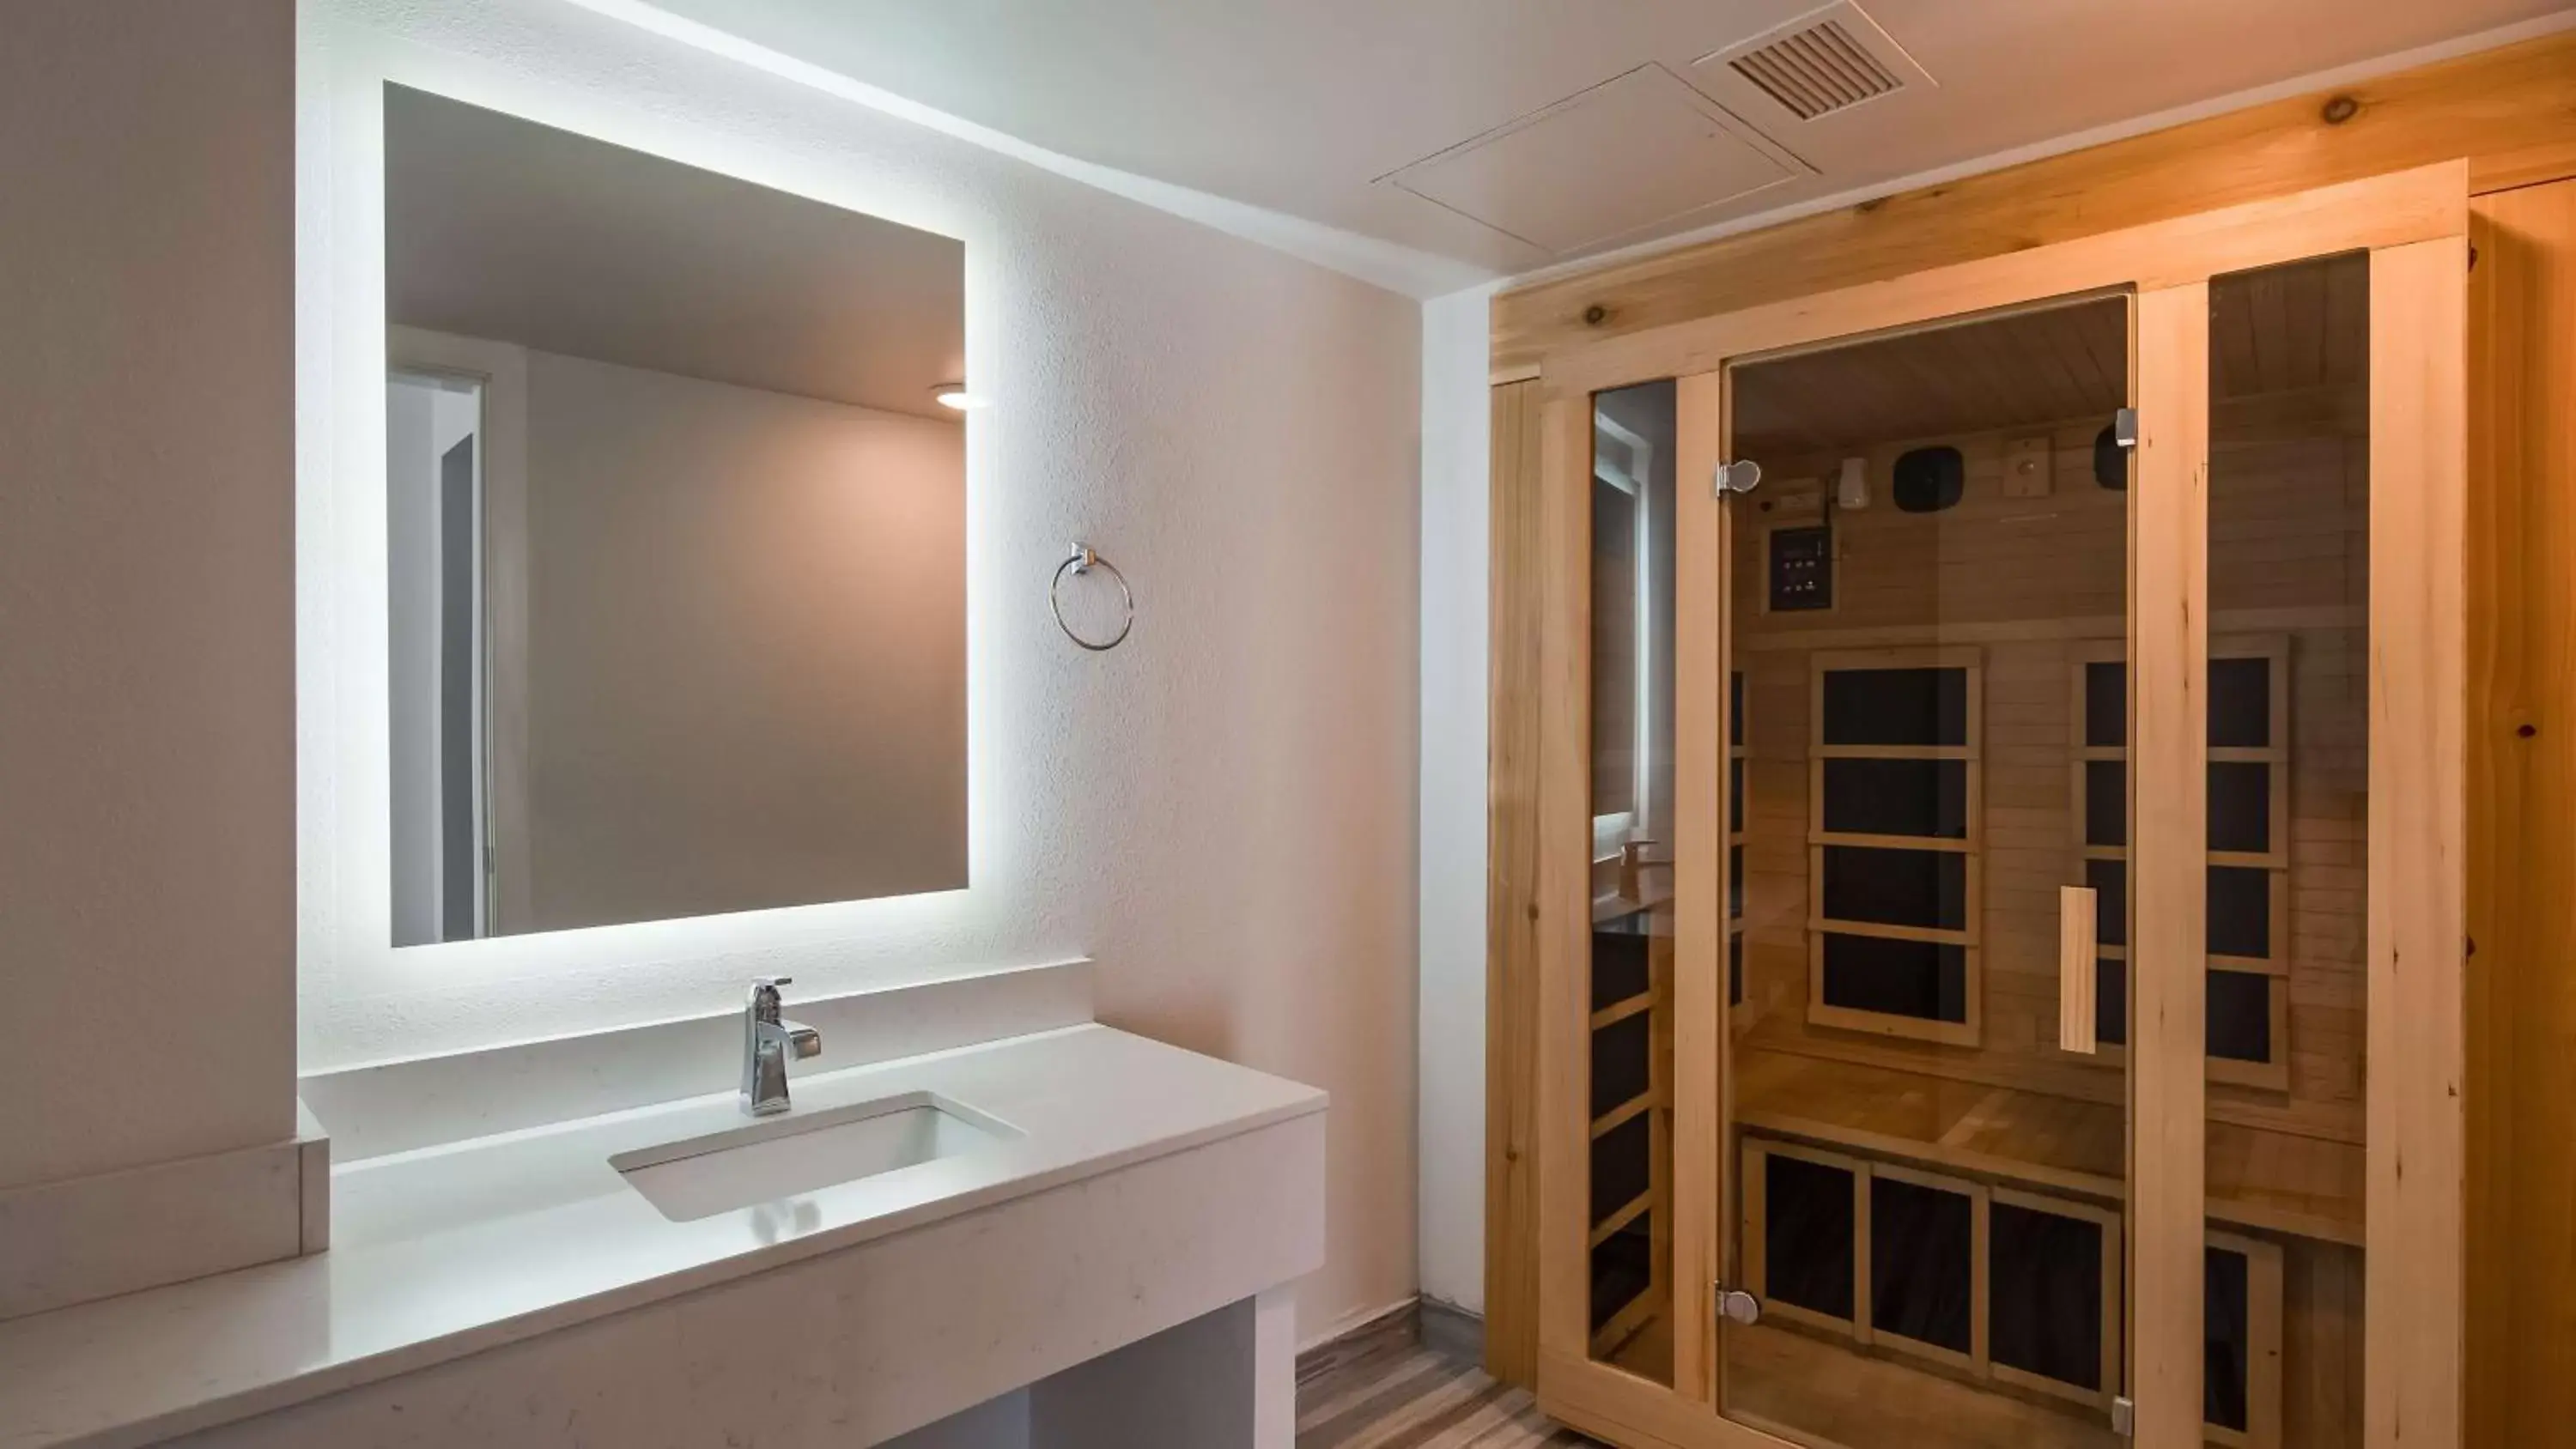 Photo of the whole room, Bathroom in Best Western Plus Wausau Tower Inn